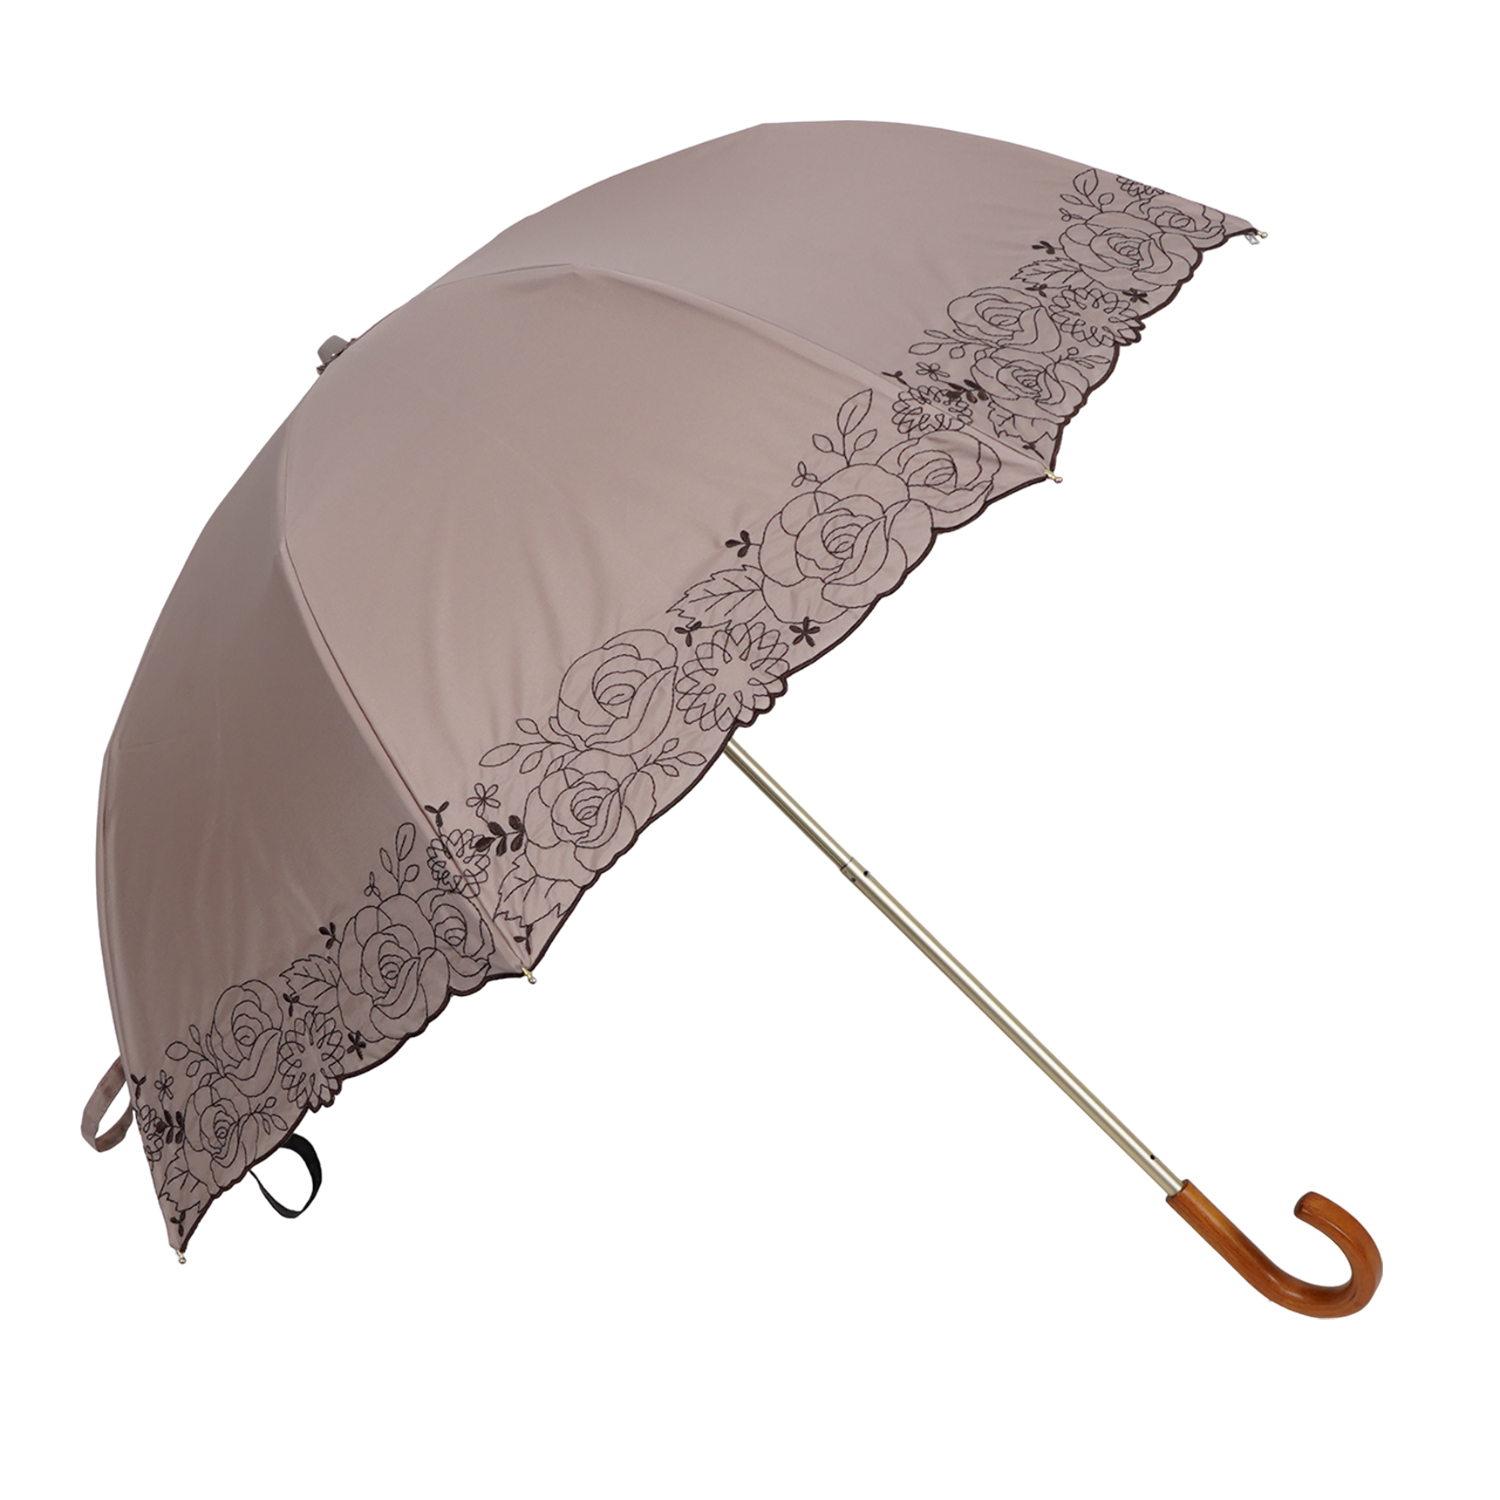 ピンクトリック pinktrick 日傘 折りたたみ 完全遮光 軽量 晴雨兼用 2段 雨傘 レディー...